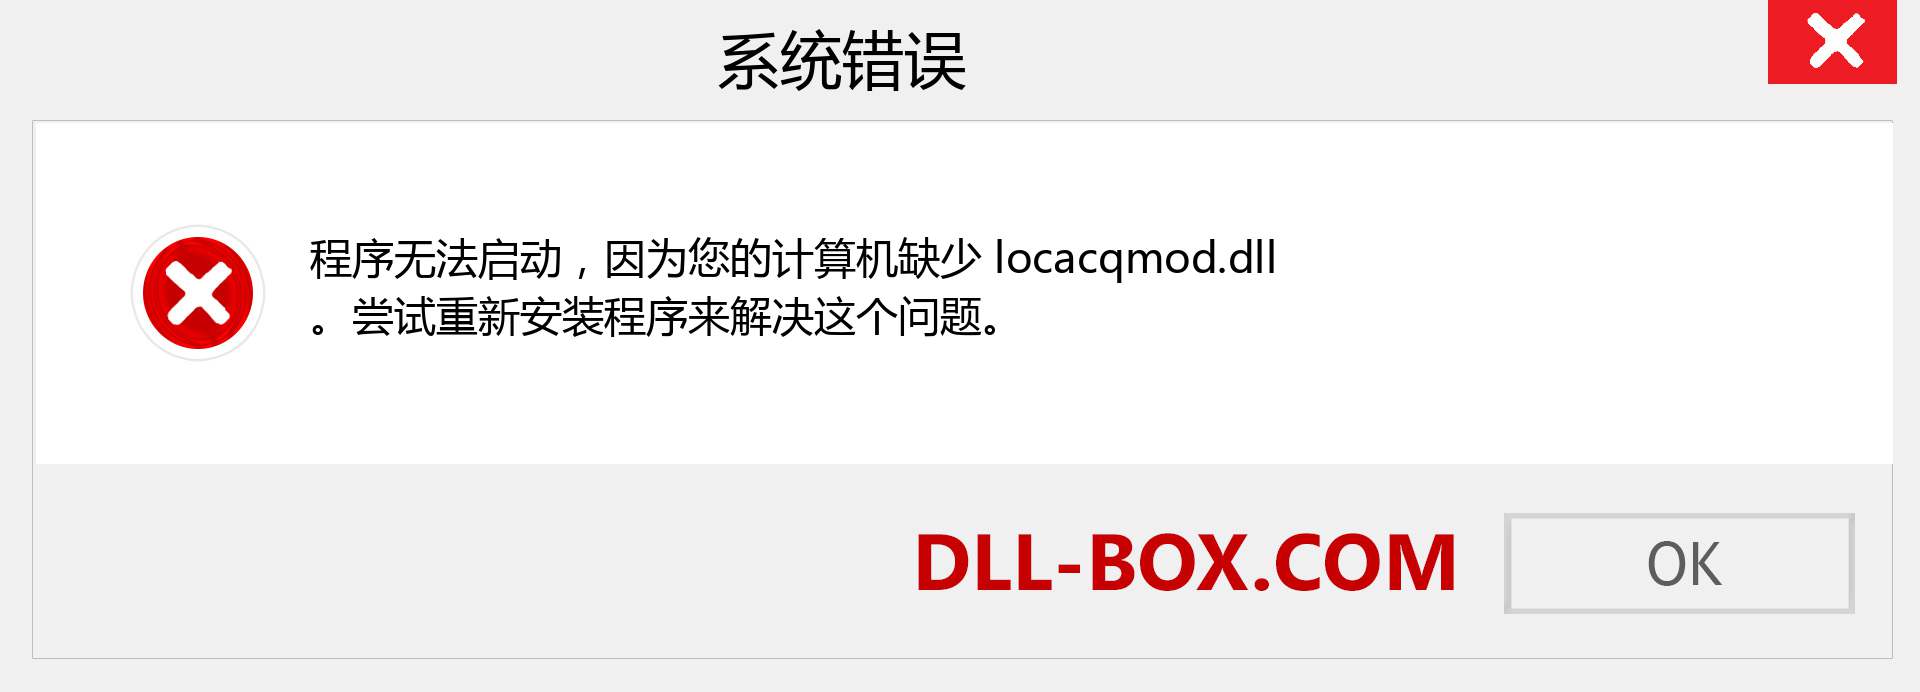 locacqmod.dll 文件丢失？。 适用于 Windows 7、8、10 的下载 - 修复 Windows、照片、图像上的 locacqmod dll 丢失错误